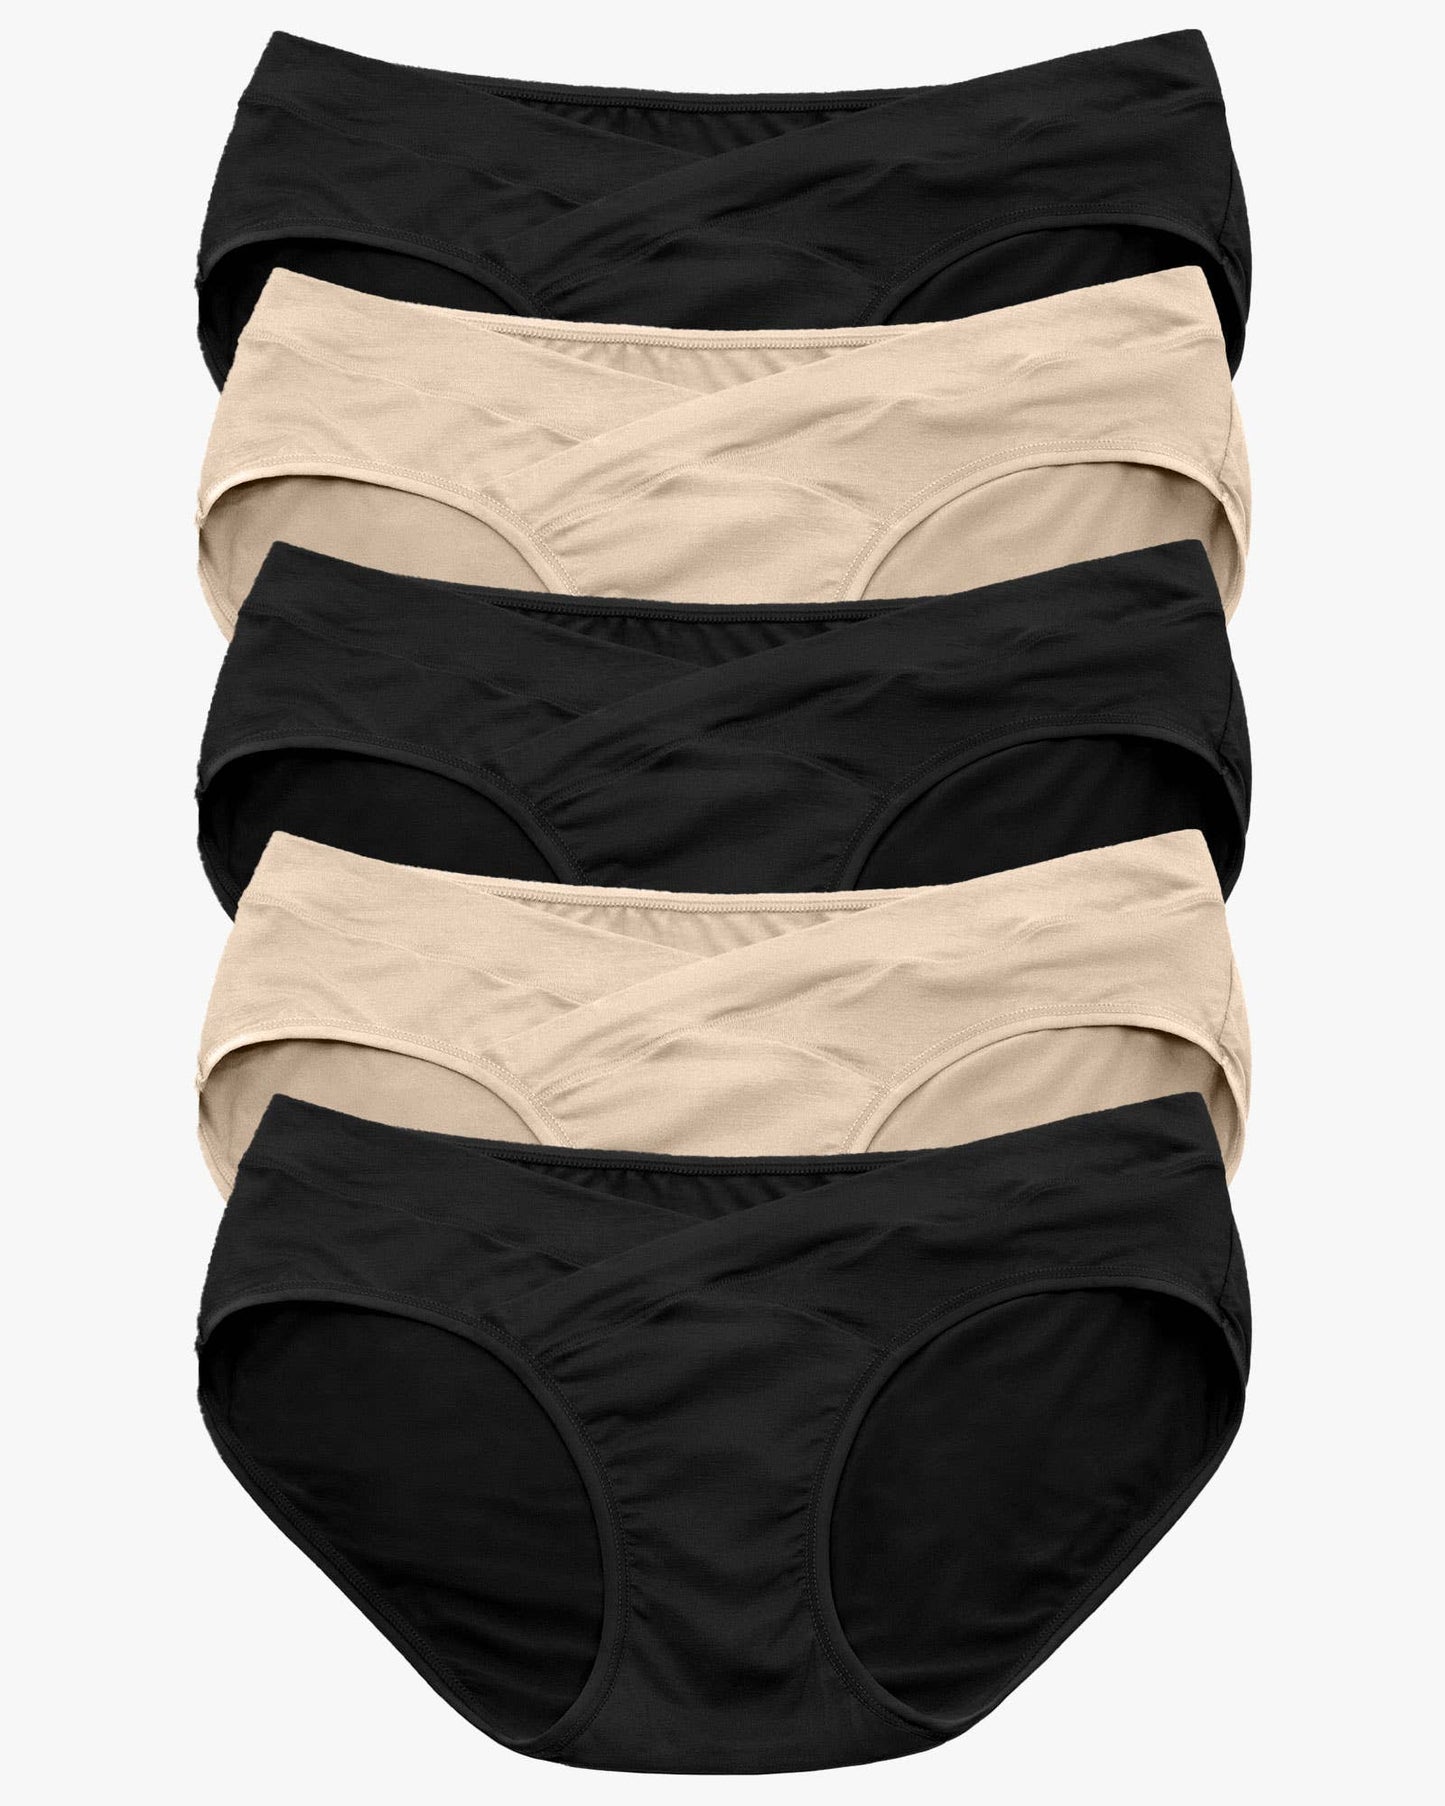 Kindred Bravely - Under-the-Bump Bikini Underwear Neutrals (5-Pack